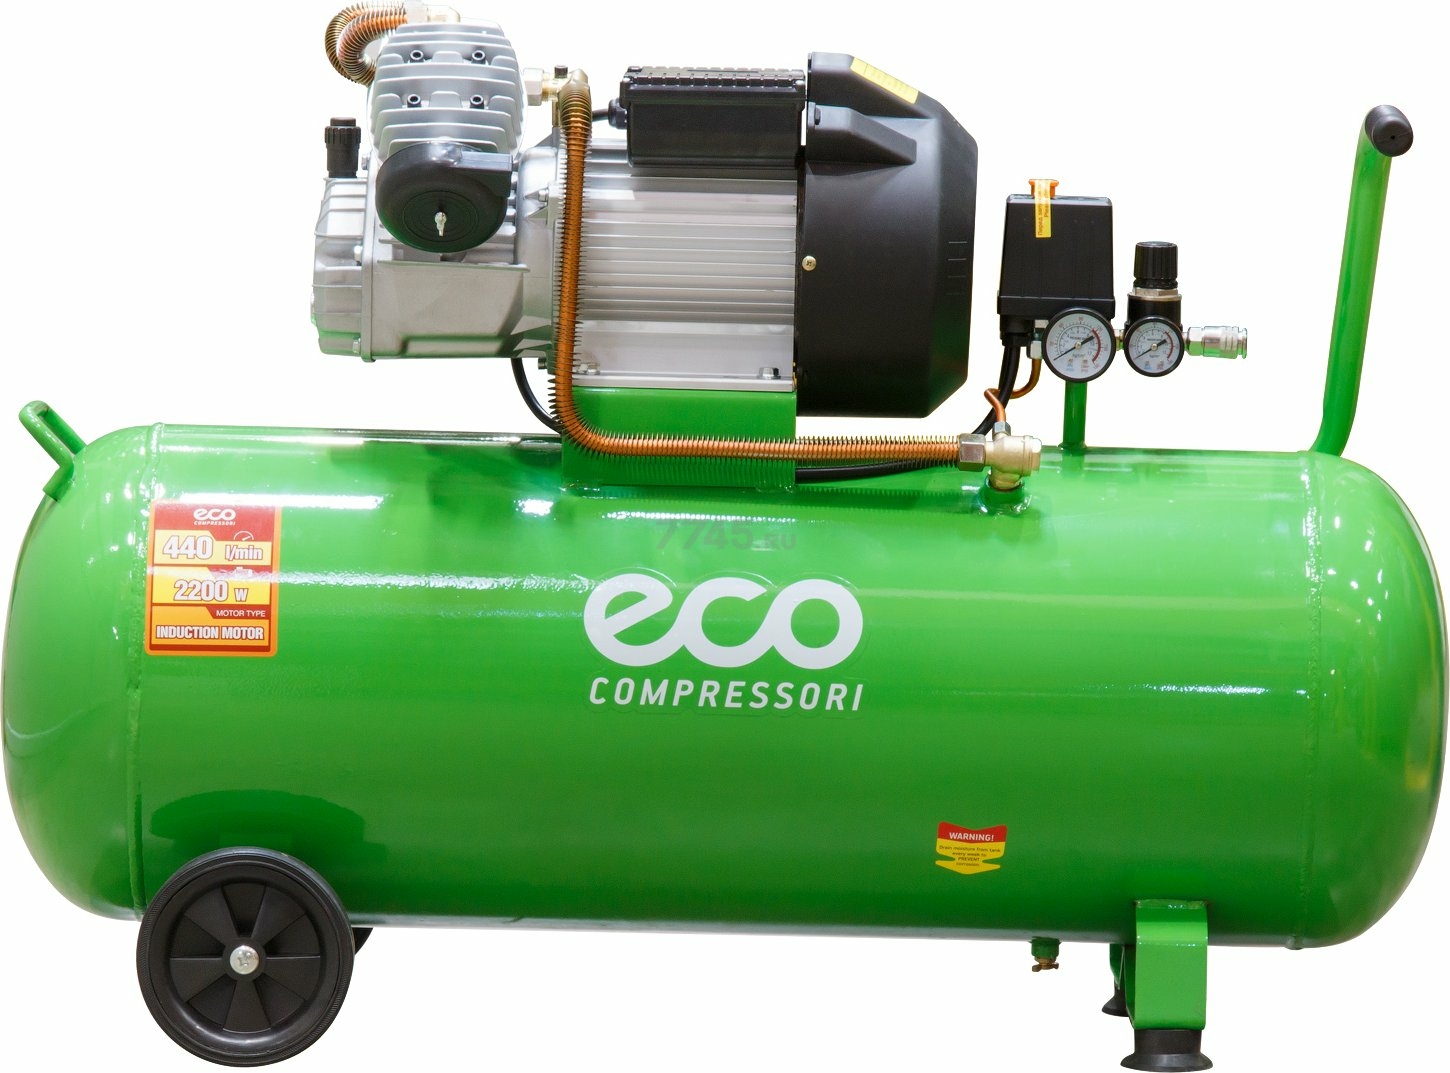 Купить компрессор эко. Компрессор Eco AE-1005-b2. Компрессор Eco AE-1005-3 (100л, 440 л/м, 8а). Компрессор Eco 100л. Компрессорная голова Eco AE-1005-2.